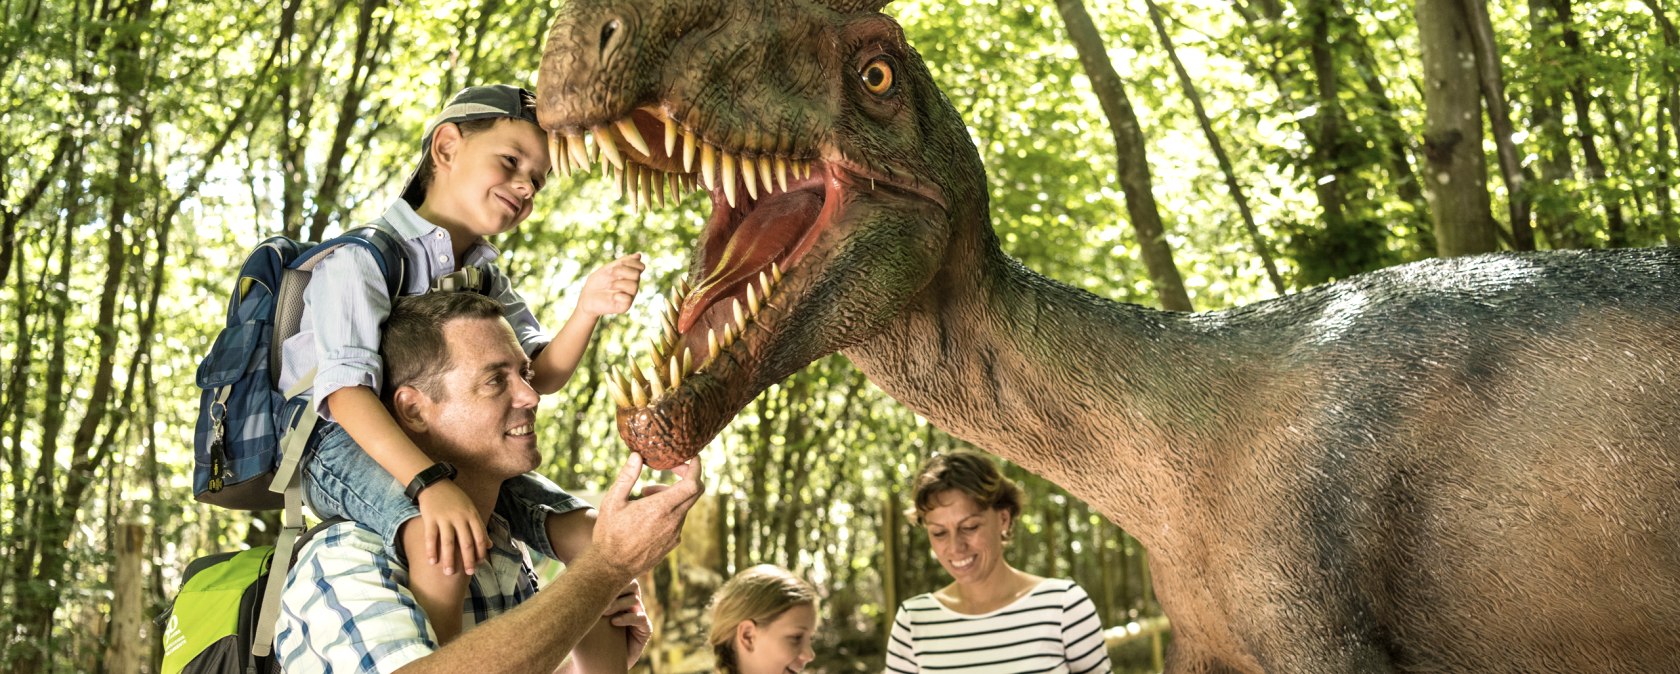 Familie im Dinopark, © Eifel Tourismus GmbH/Dominik Ketz